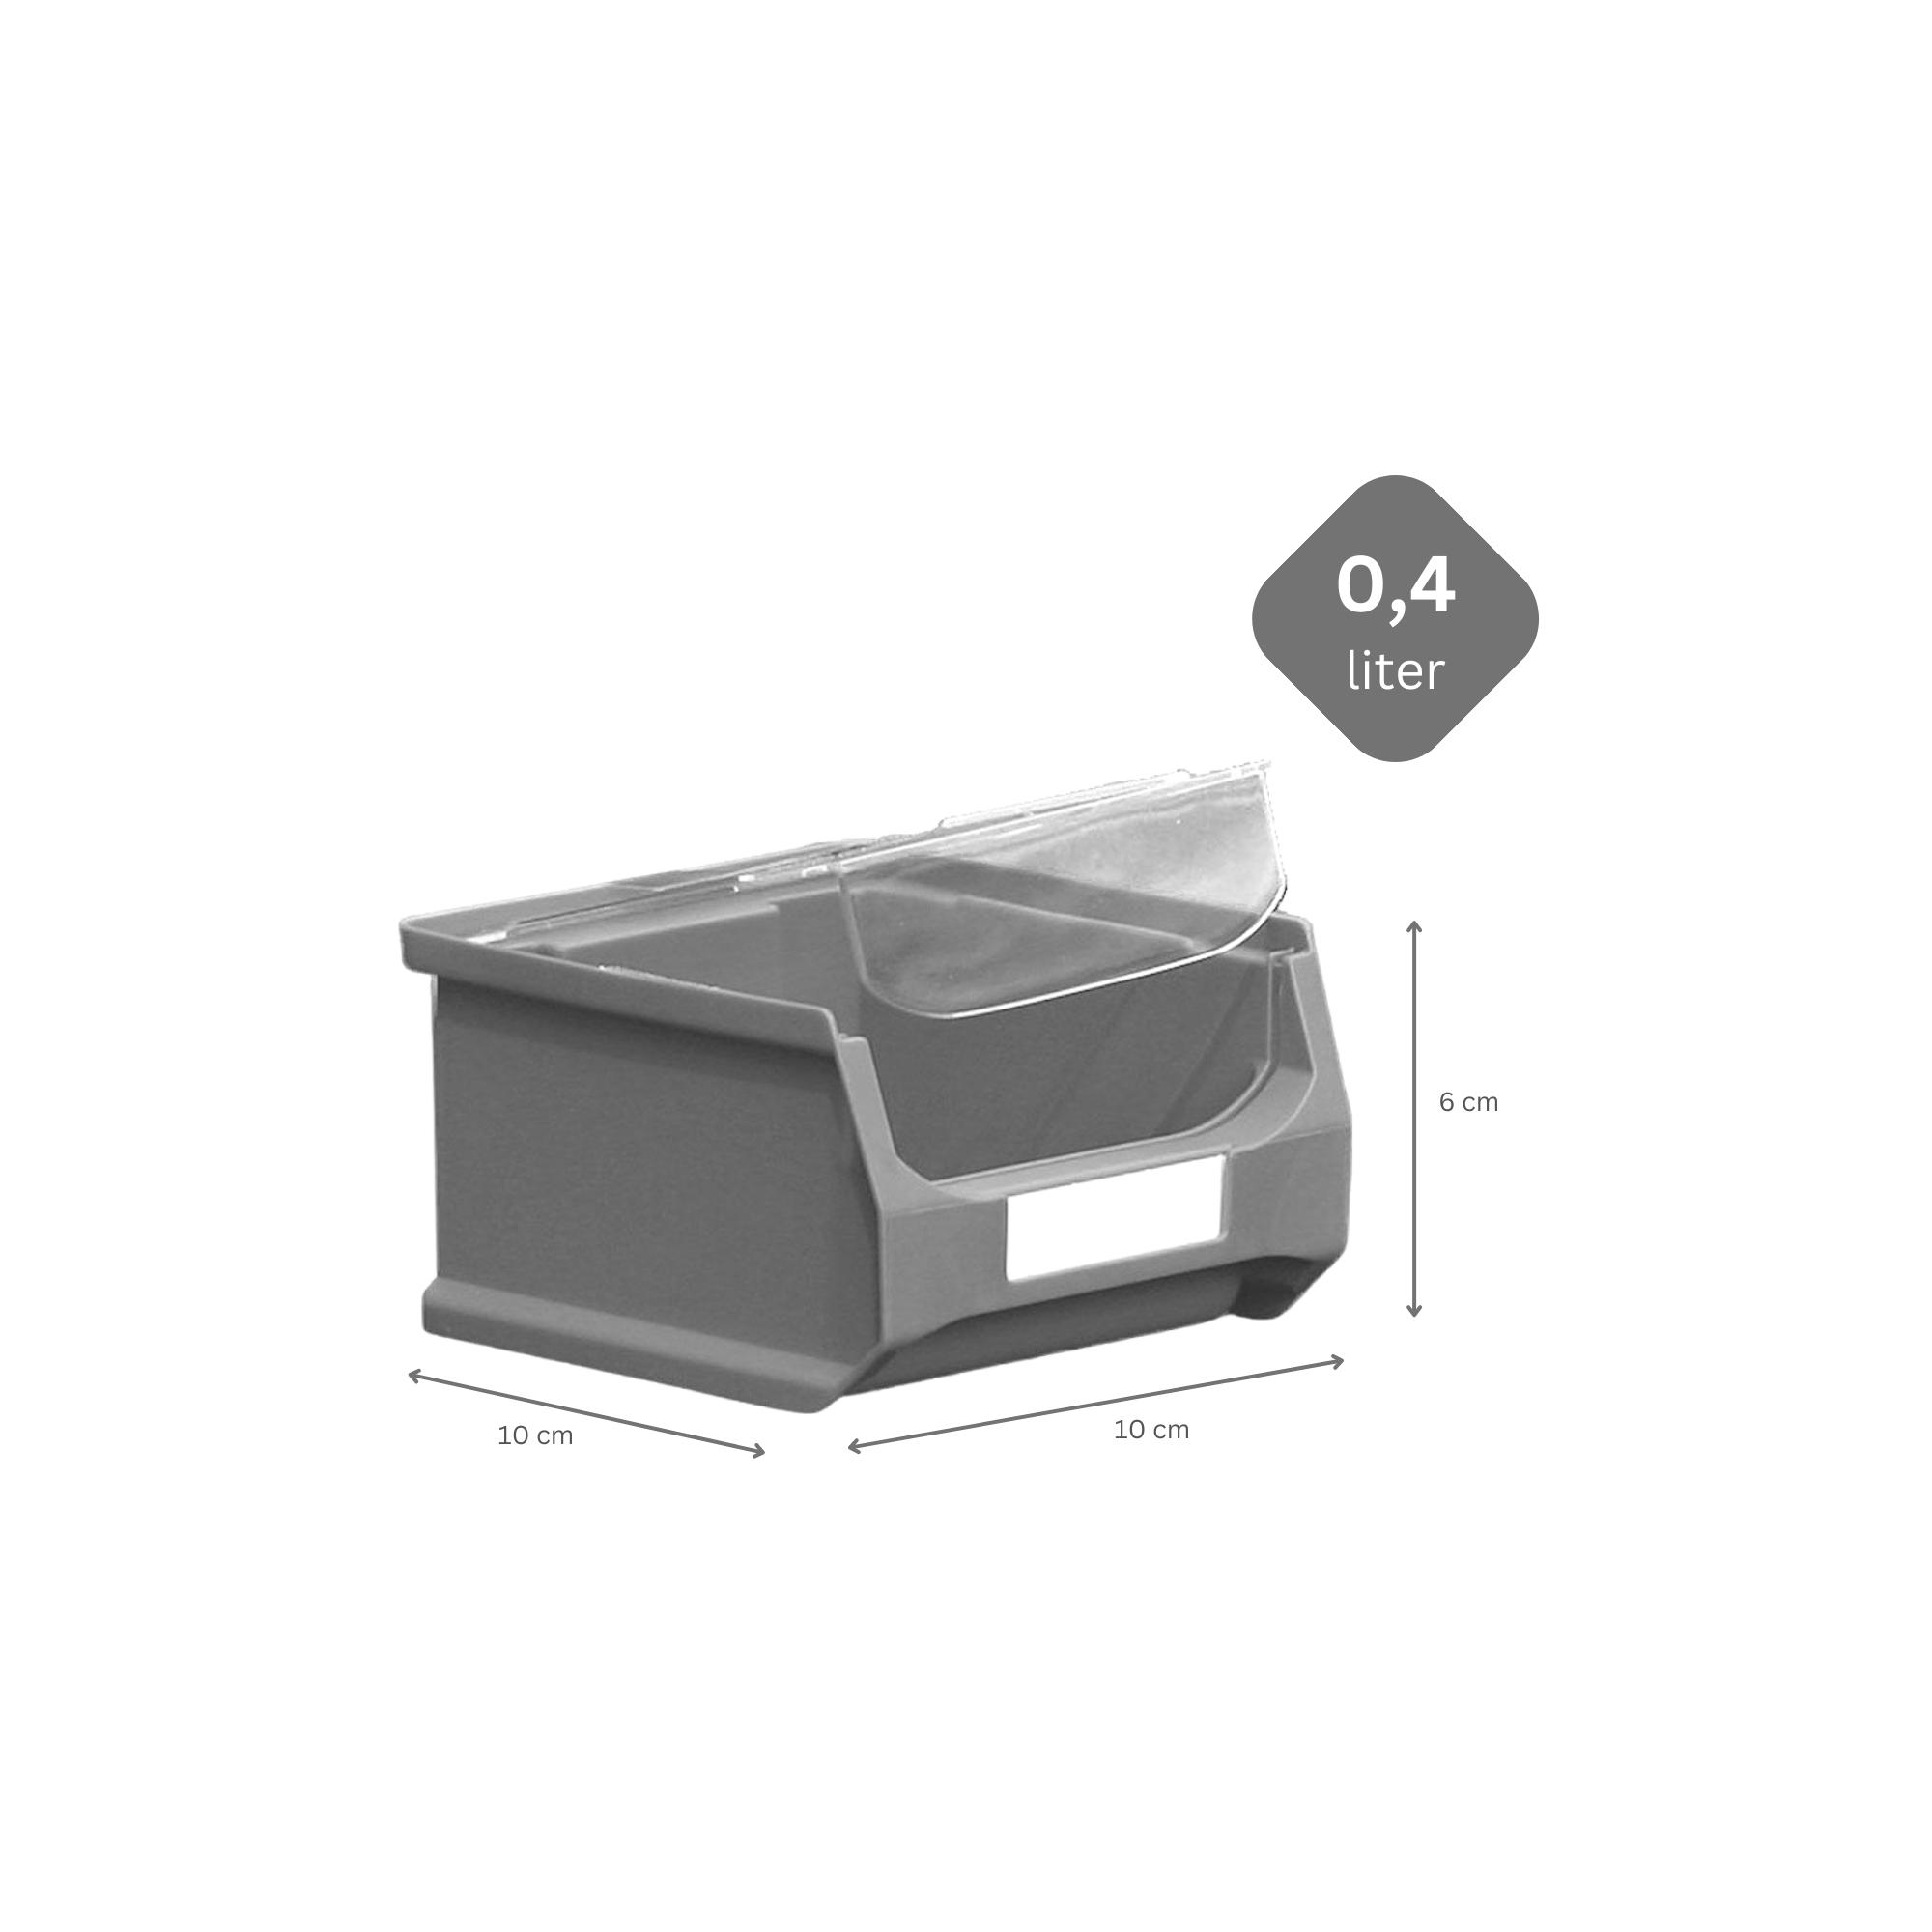 SuperSparSet 48x Graue Sichtlagerbox 1.0 mit Abdeckung | HxBxT 6x10x10cm | 0,4 Liter | Sichtlagerbehälter, Sichtlagerkasten, Sichtlagerkastensortiment, Sortierbehälter